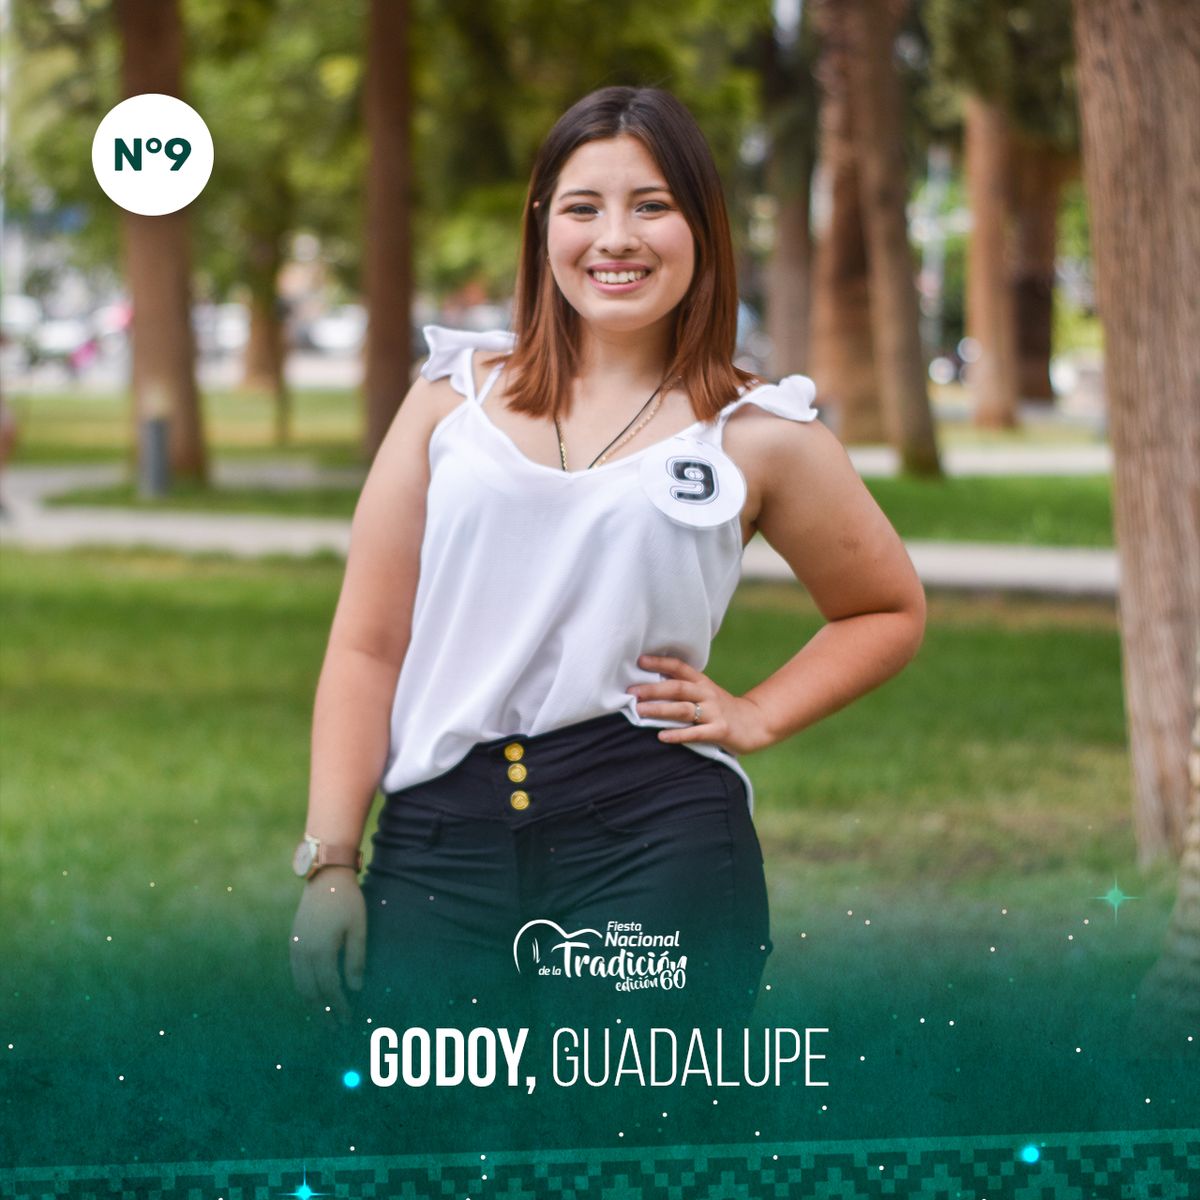 Guadalupe Godoy